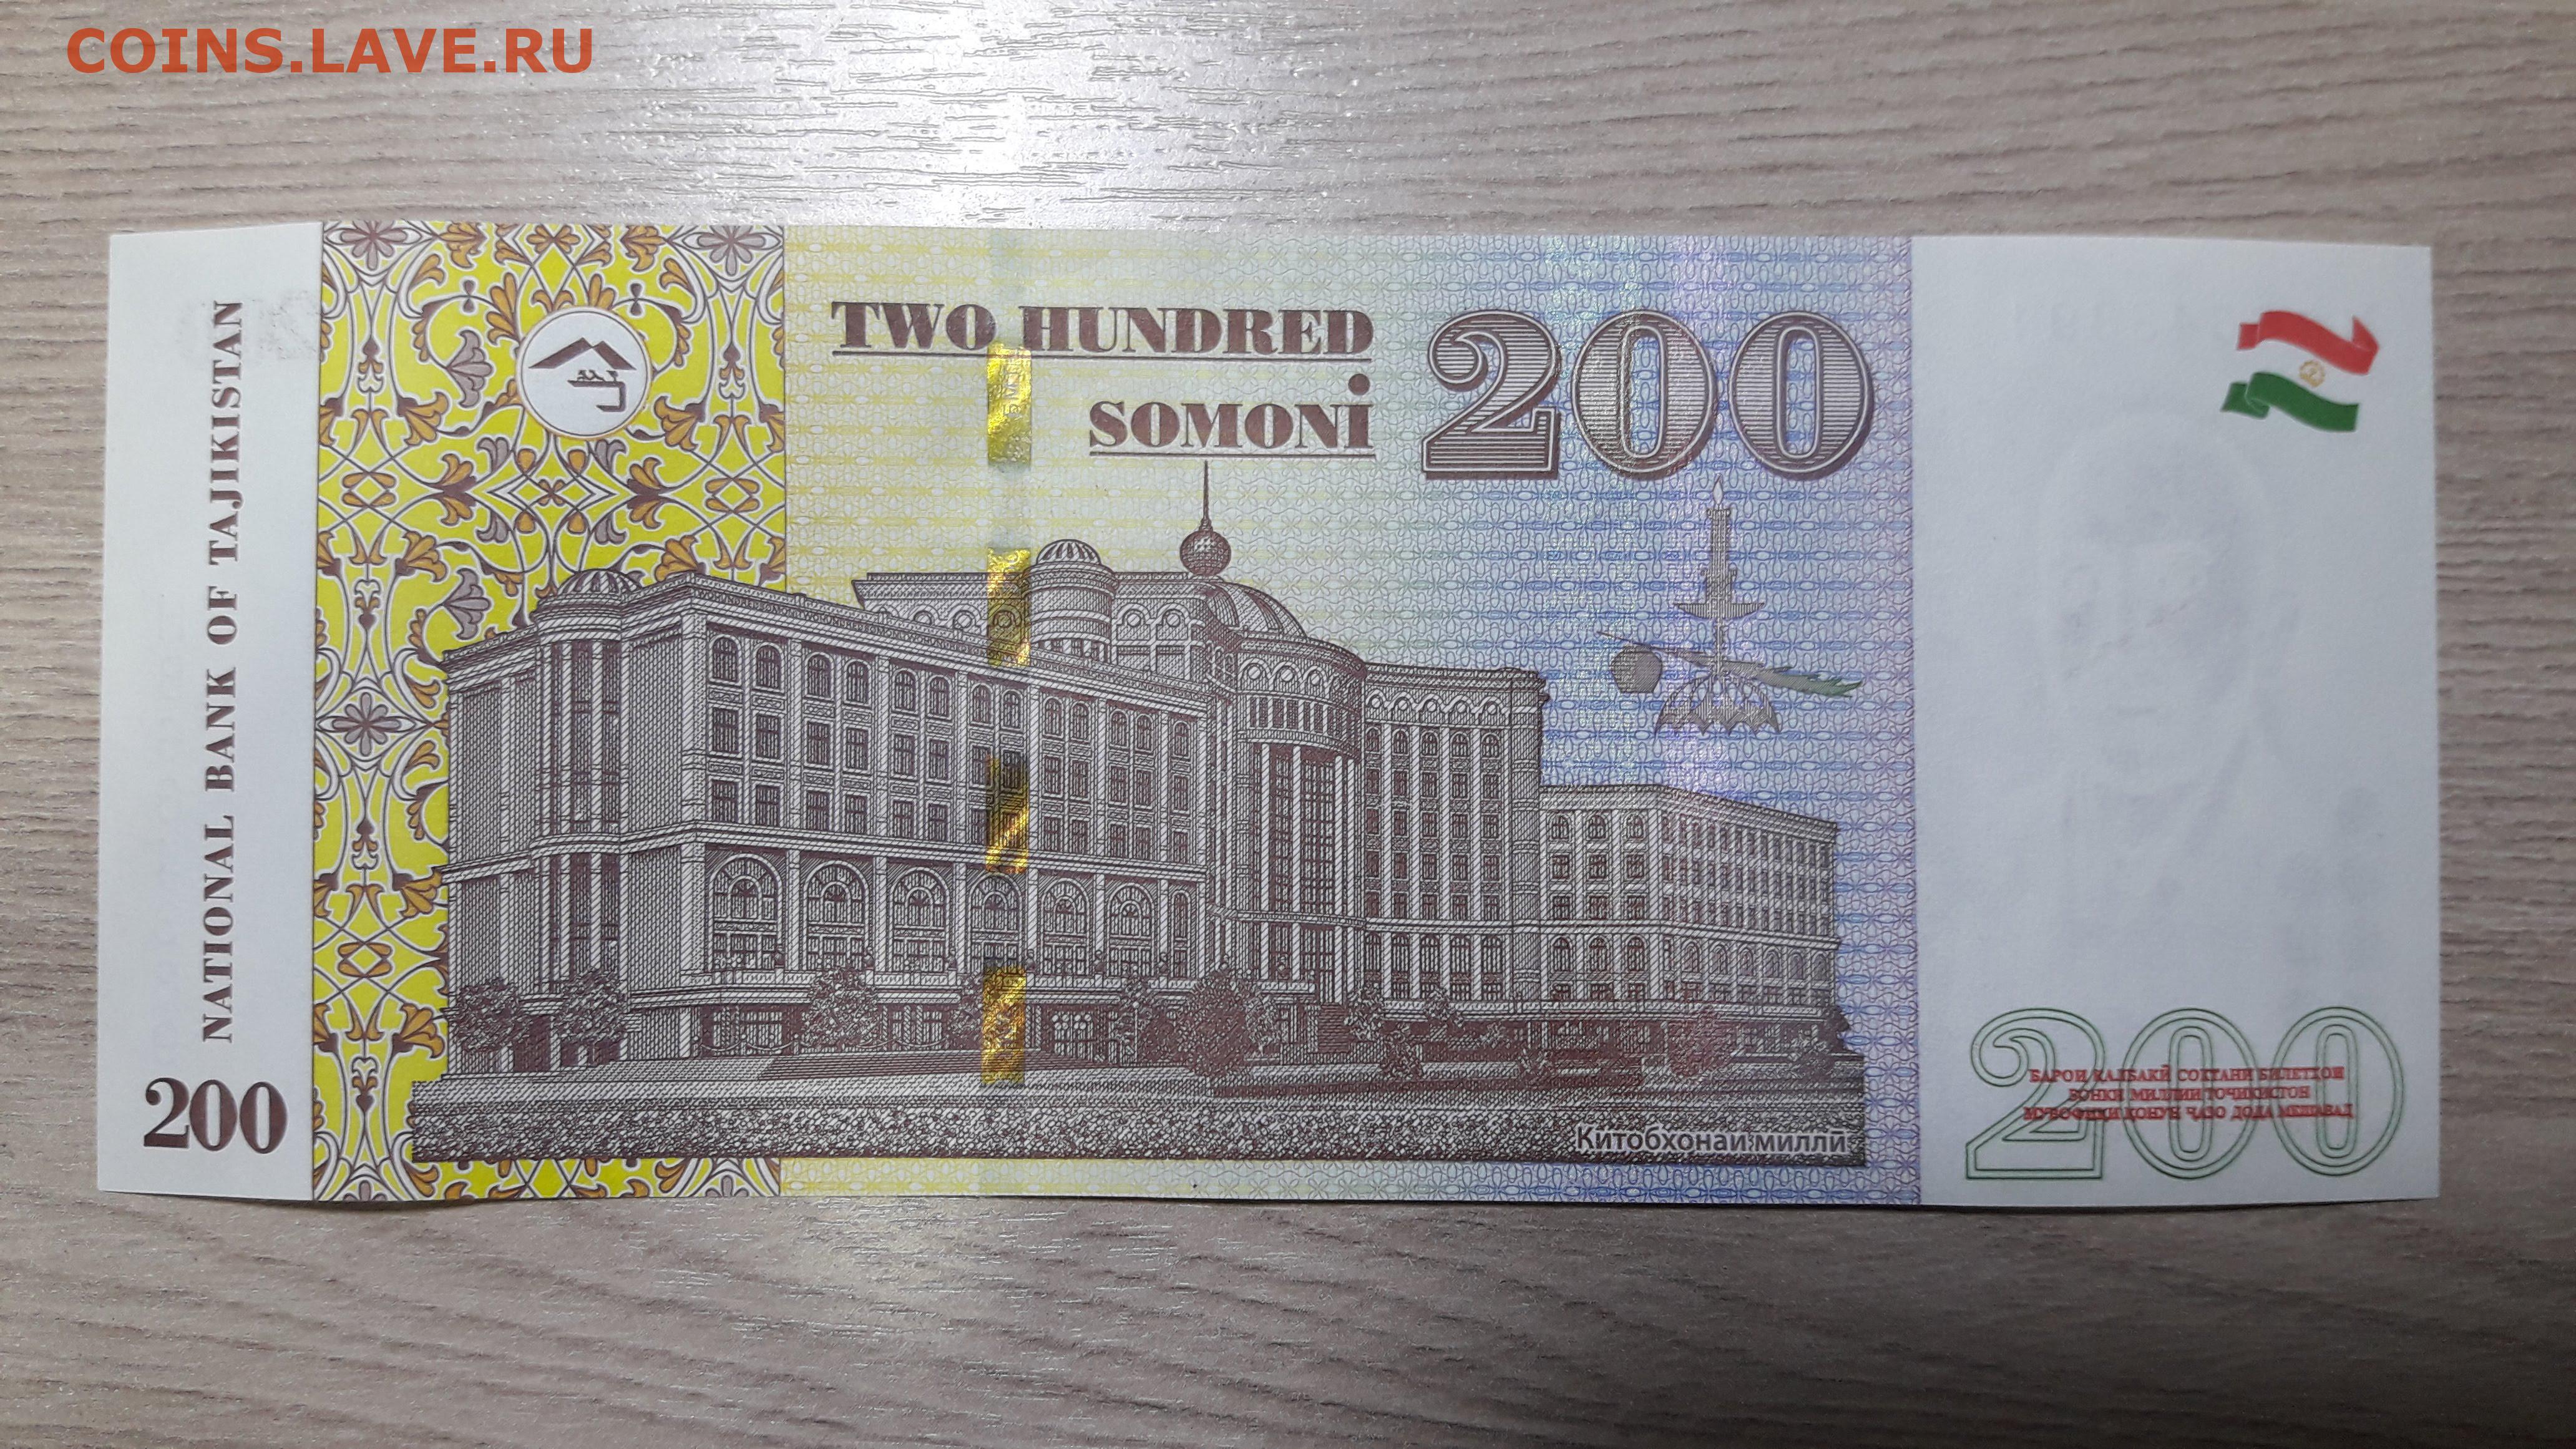 500 сомони в рублях на сегодня. 200 Сомони. Купюра Сомони. Деньги Таджикистана. Купюра 10 Сомони.